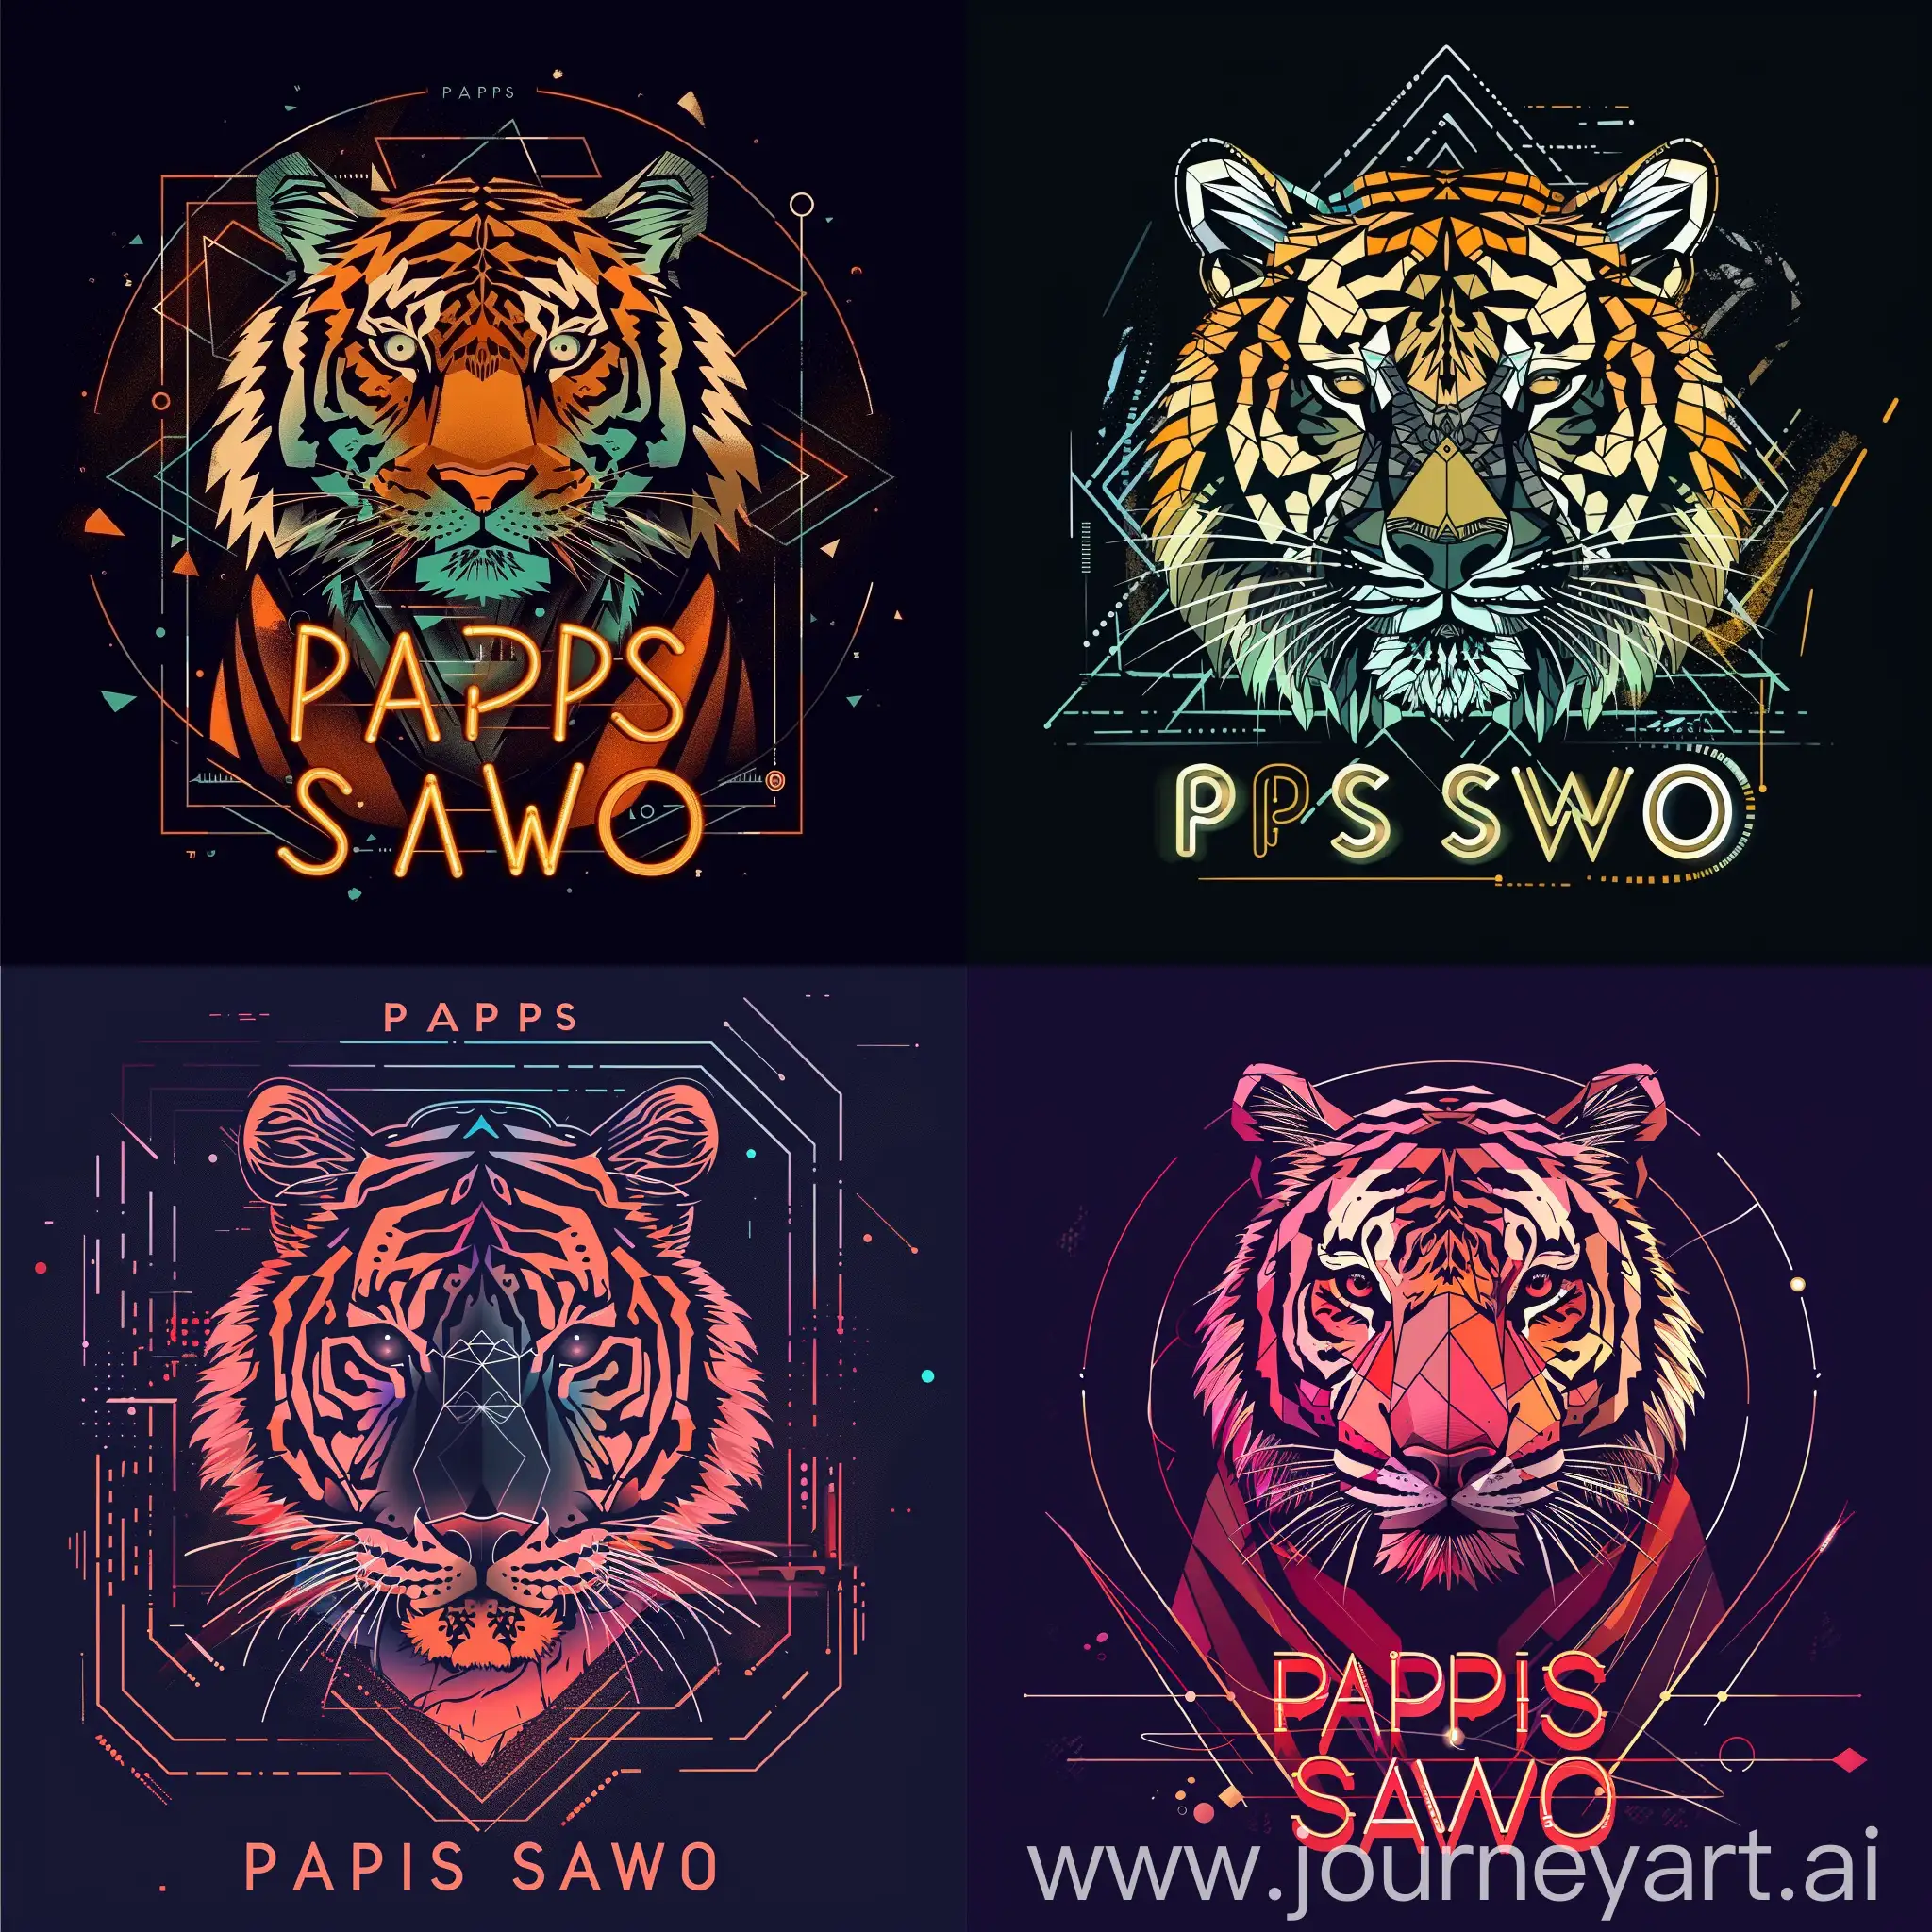 логотип со словами "PAPIS SAWO", с изображением стилизованного тигра в техно стиле, тигр в стилизованном графическом виде с использованием геометрических форм и цифровых элементов, чтобы подчеркнуть техно-стиль логотипа, неоновый шрифт для надписи "PAPIS SAWO", добавит эффектного контраста и привлечет внимание к логотипу